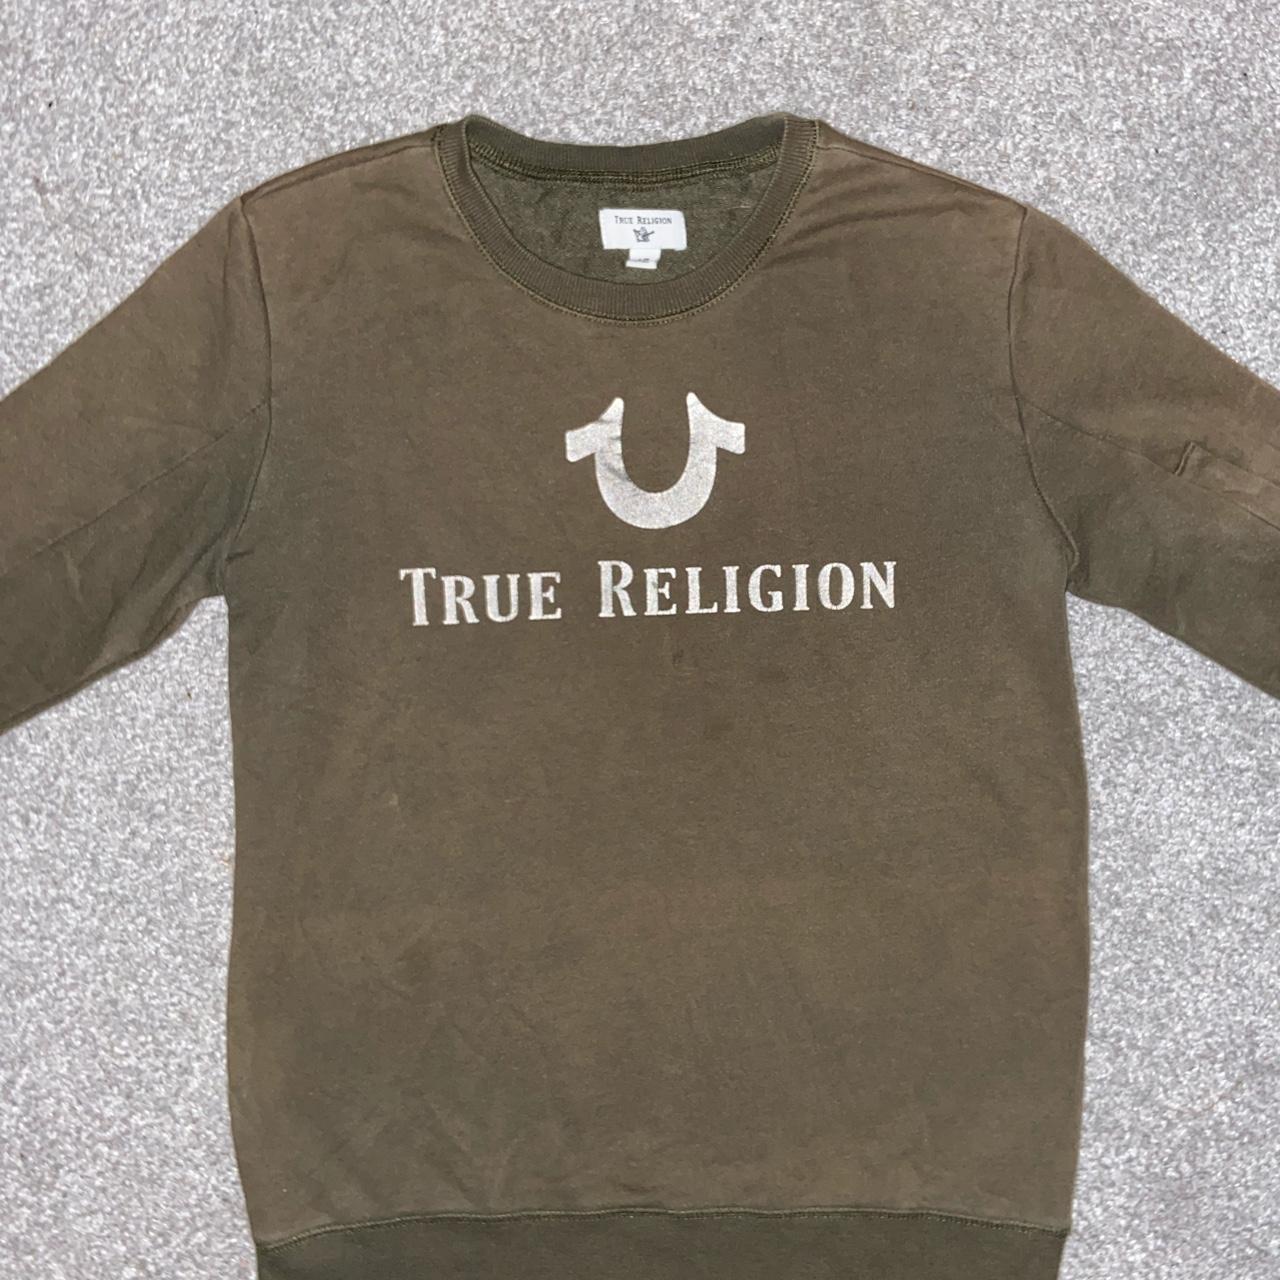 True Religion jumper - Small - Khaki... - Depop